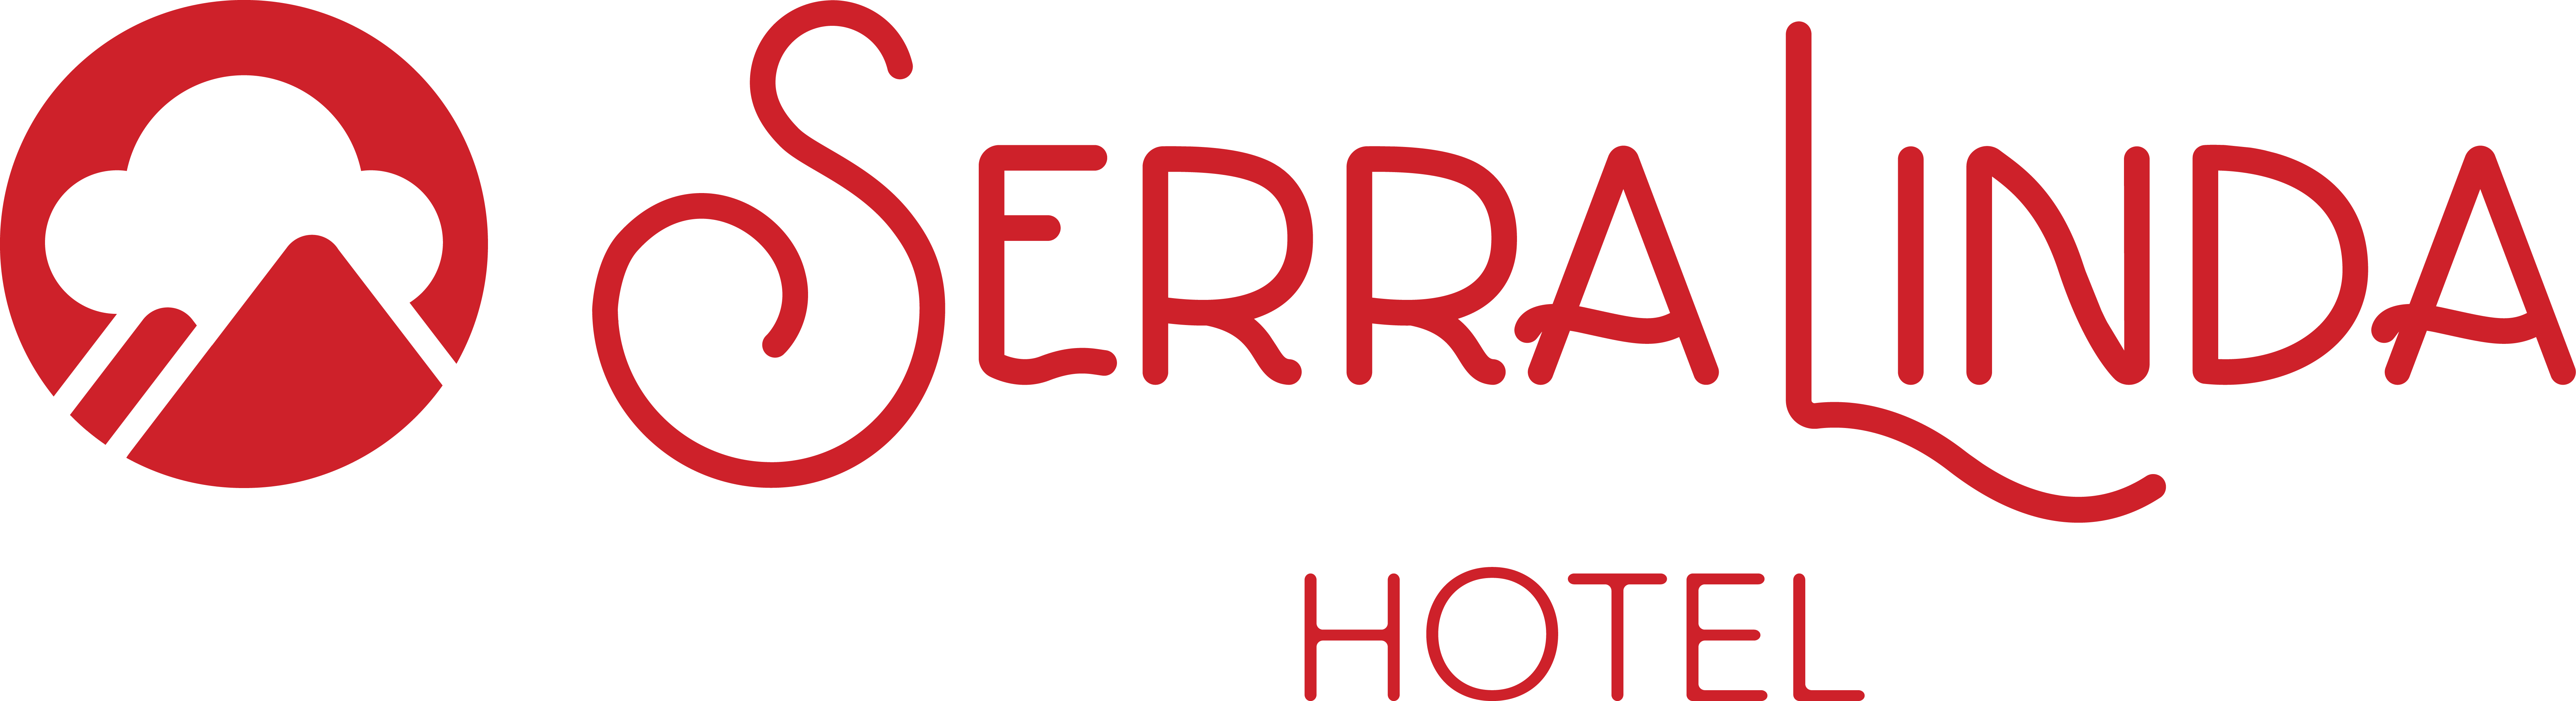 Serra Linda Hotel  - Qualidade de Hotel com Preço de Hostel